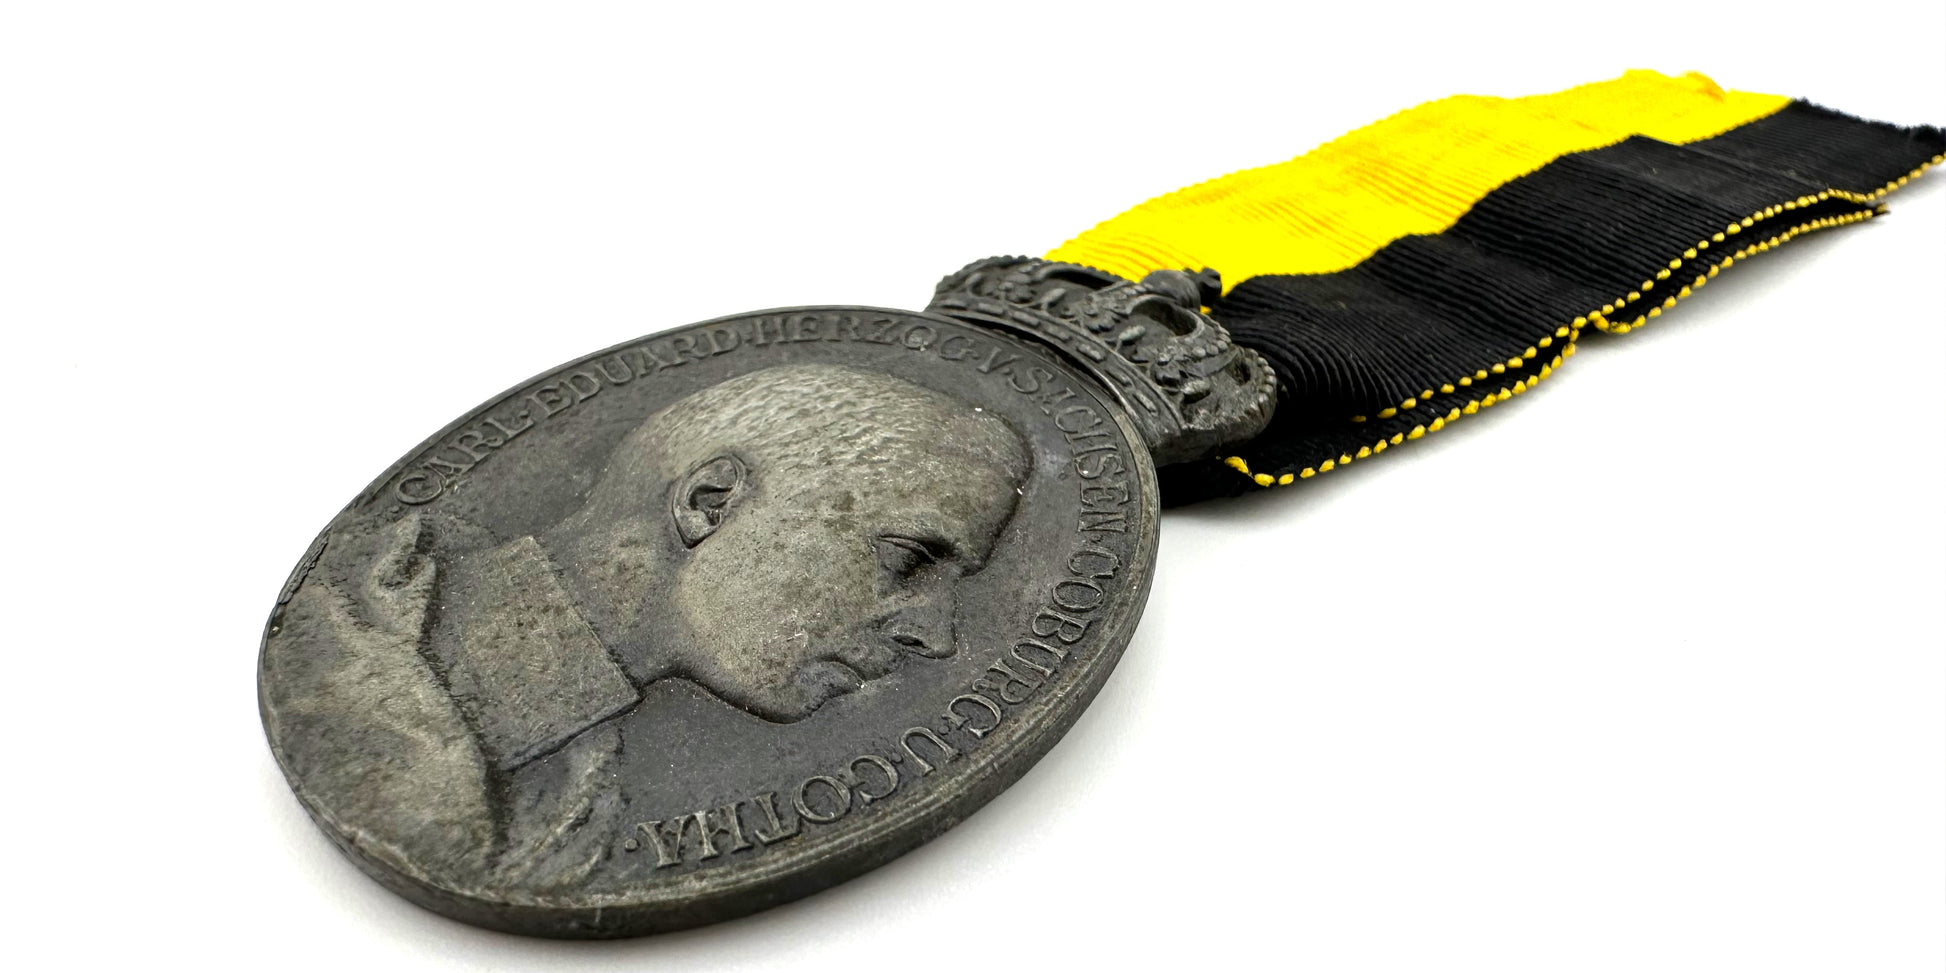 Saxe-Coburg Gotha Carl Eduard Oval Medal - Derrittmeister Militaria Group